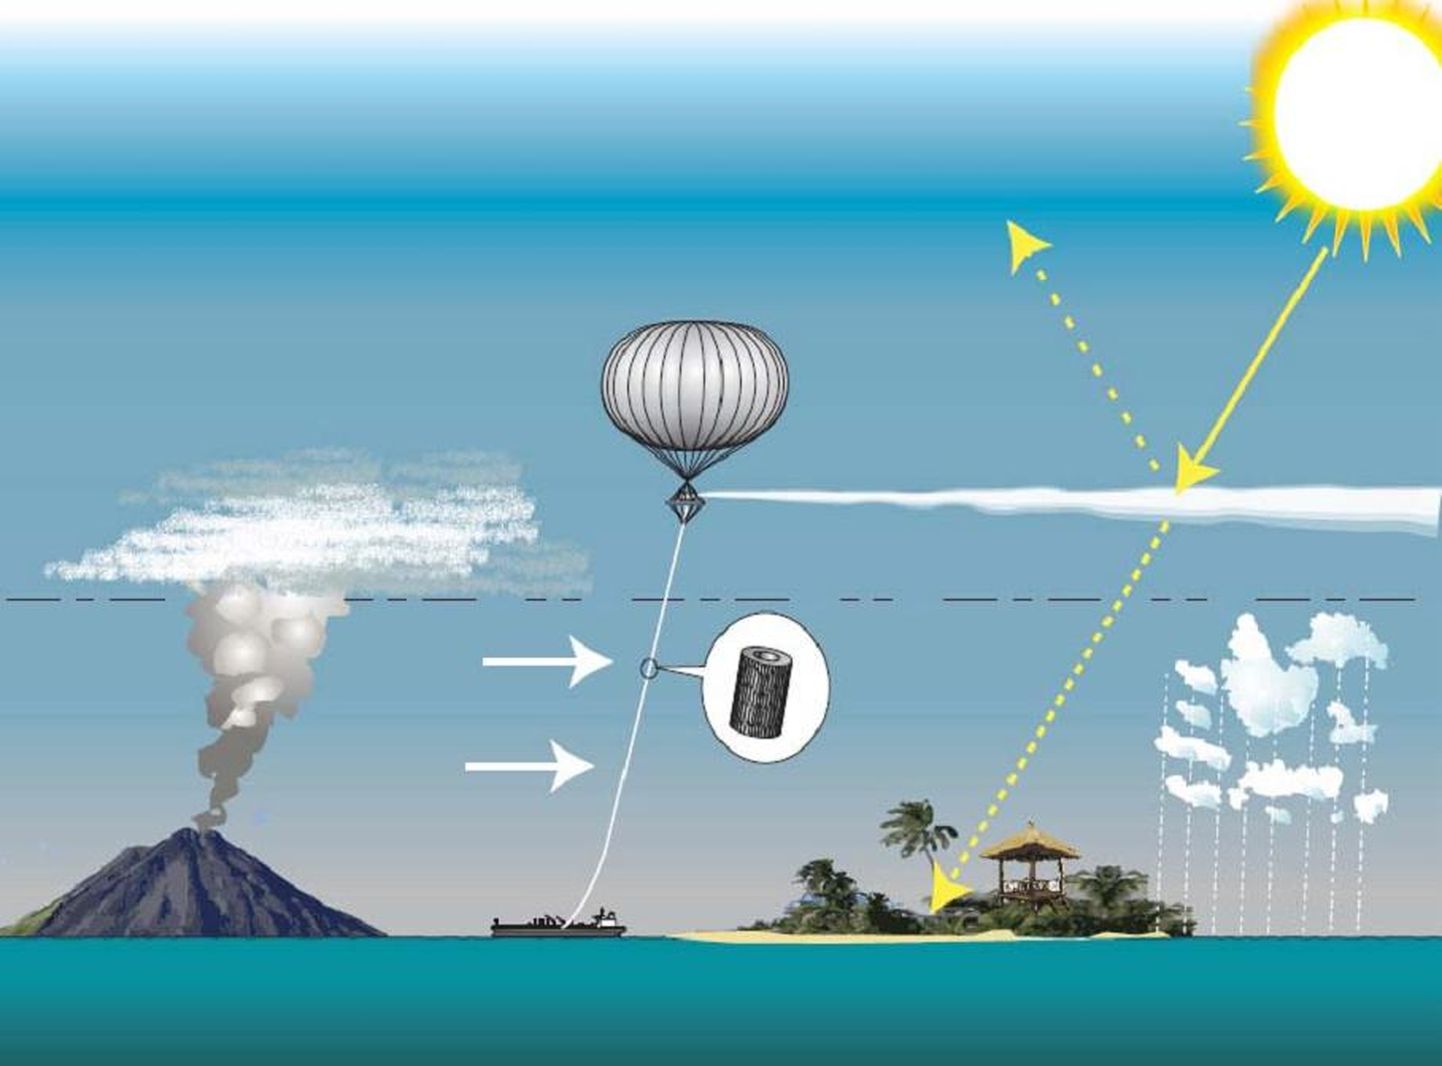 Kavandatav päikeseenergia geoinseneeria, mille puhul oleks plaan kasutada lõastatud õhupalli sulfaataerosoolide süstimiseks stratosfääri.